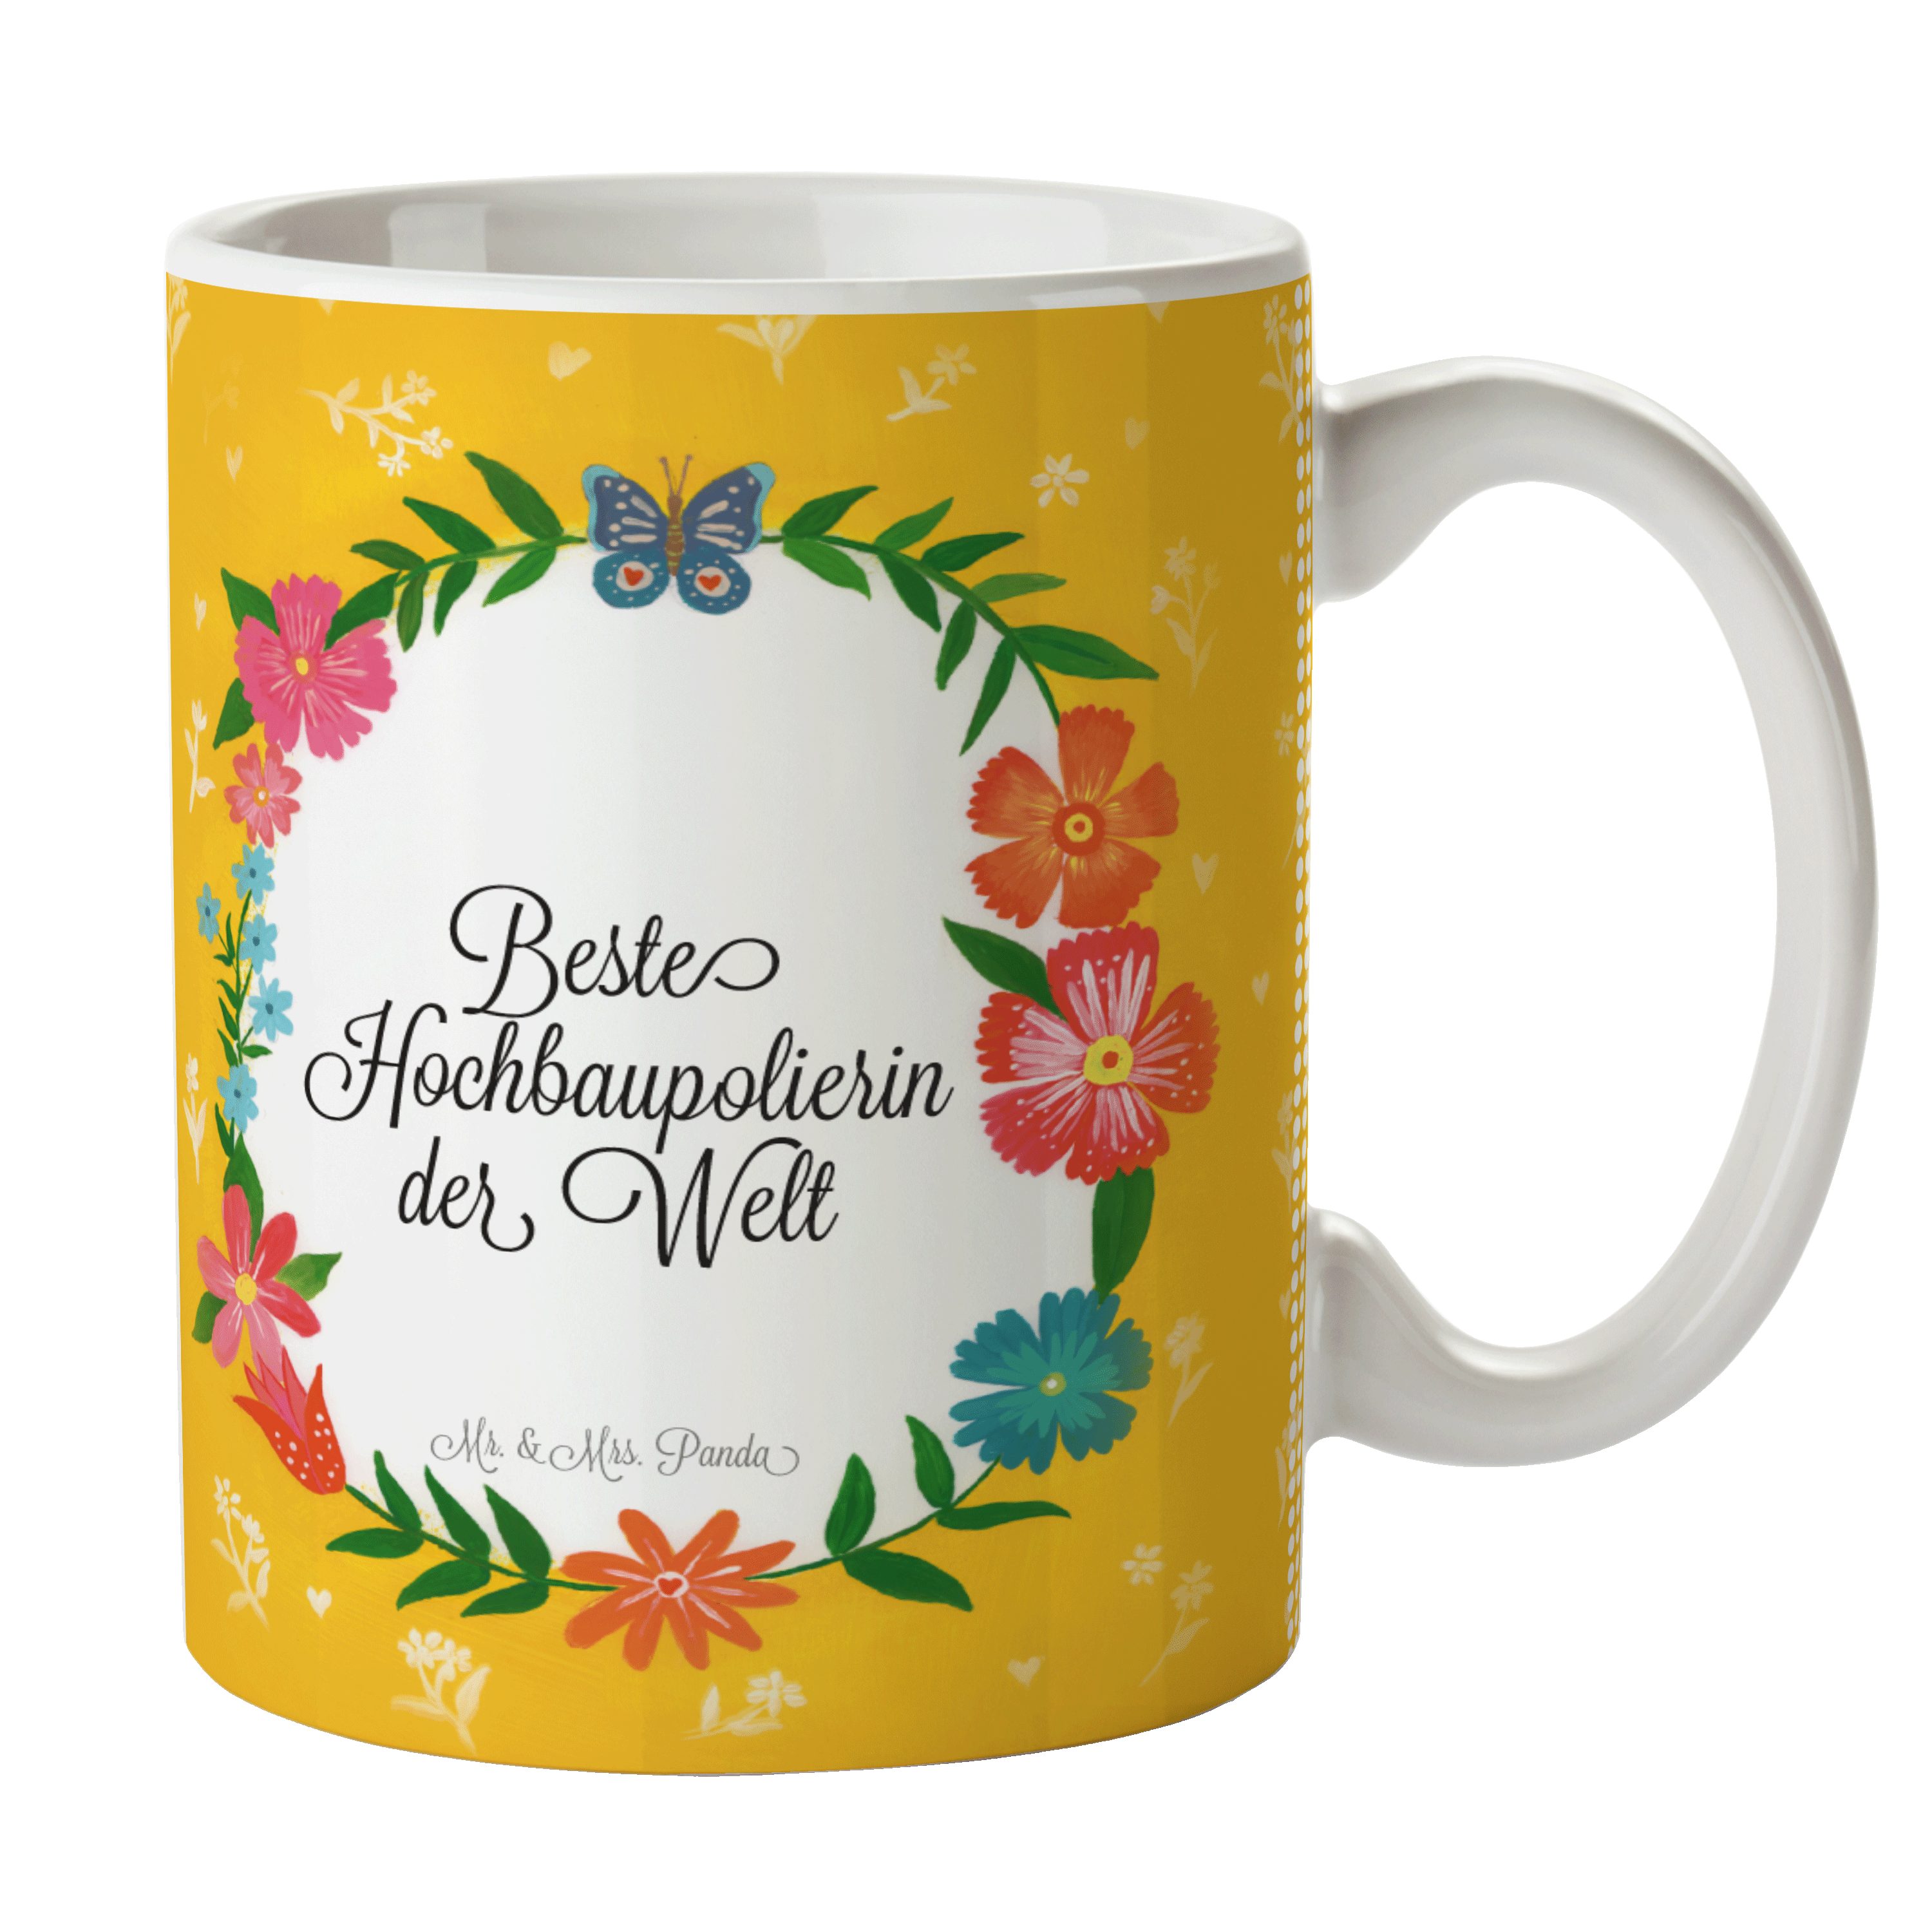 Büro Keramik Tasse Panda & Tasse, - Sprüche, Geschenk, Mr. Mrs. Tasse Kaffeebecher, Hochbaupolierin